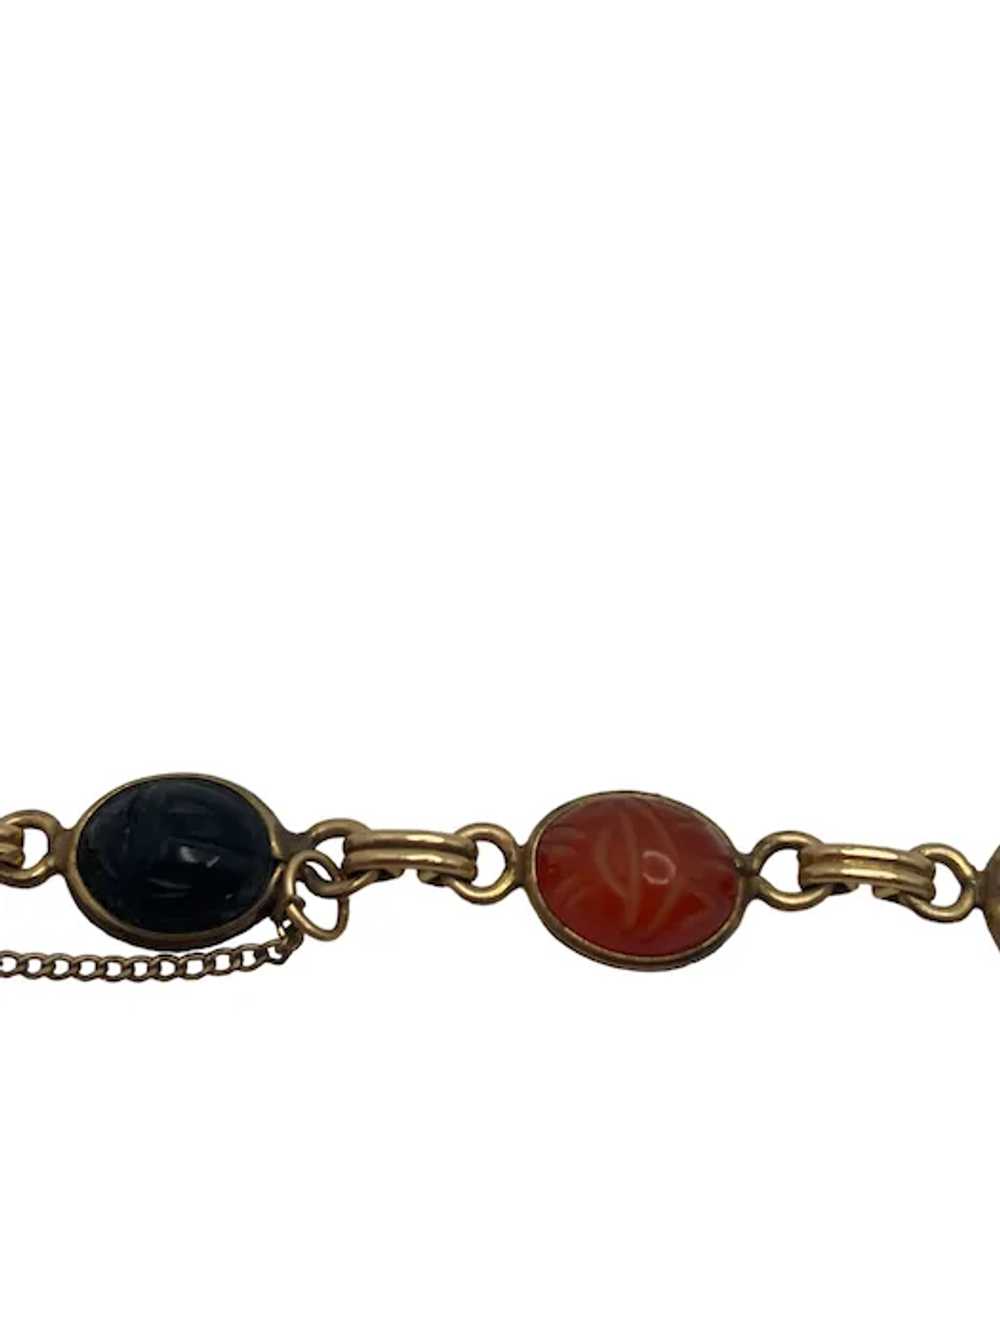 Vintage 12k Gold Filled Scarab Bracelet - image 7